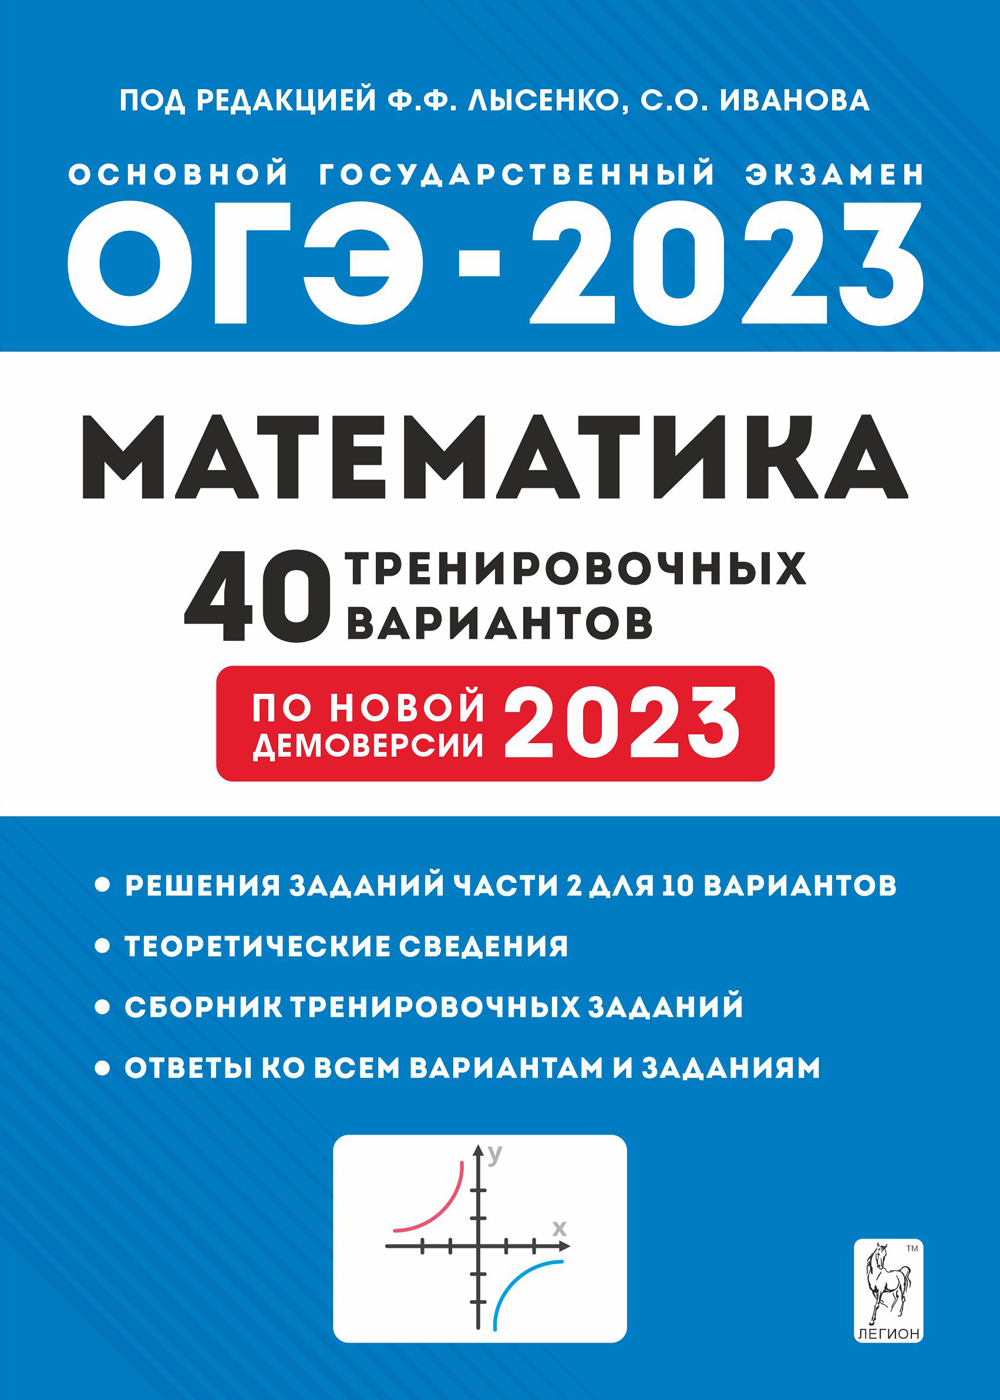 ОГЭ 2023 математика 40 тренировочных вариантов Ф.Ф.Лысенко "Легион"